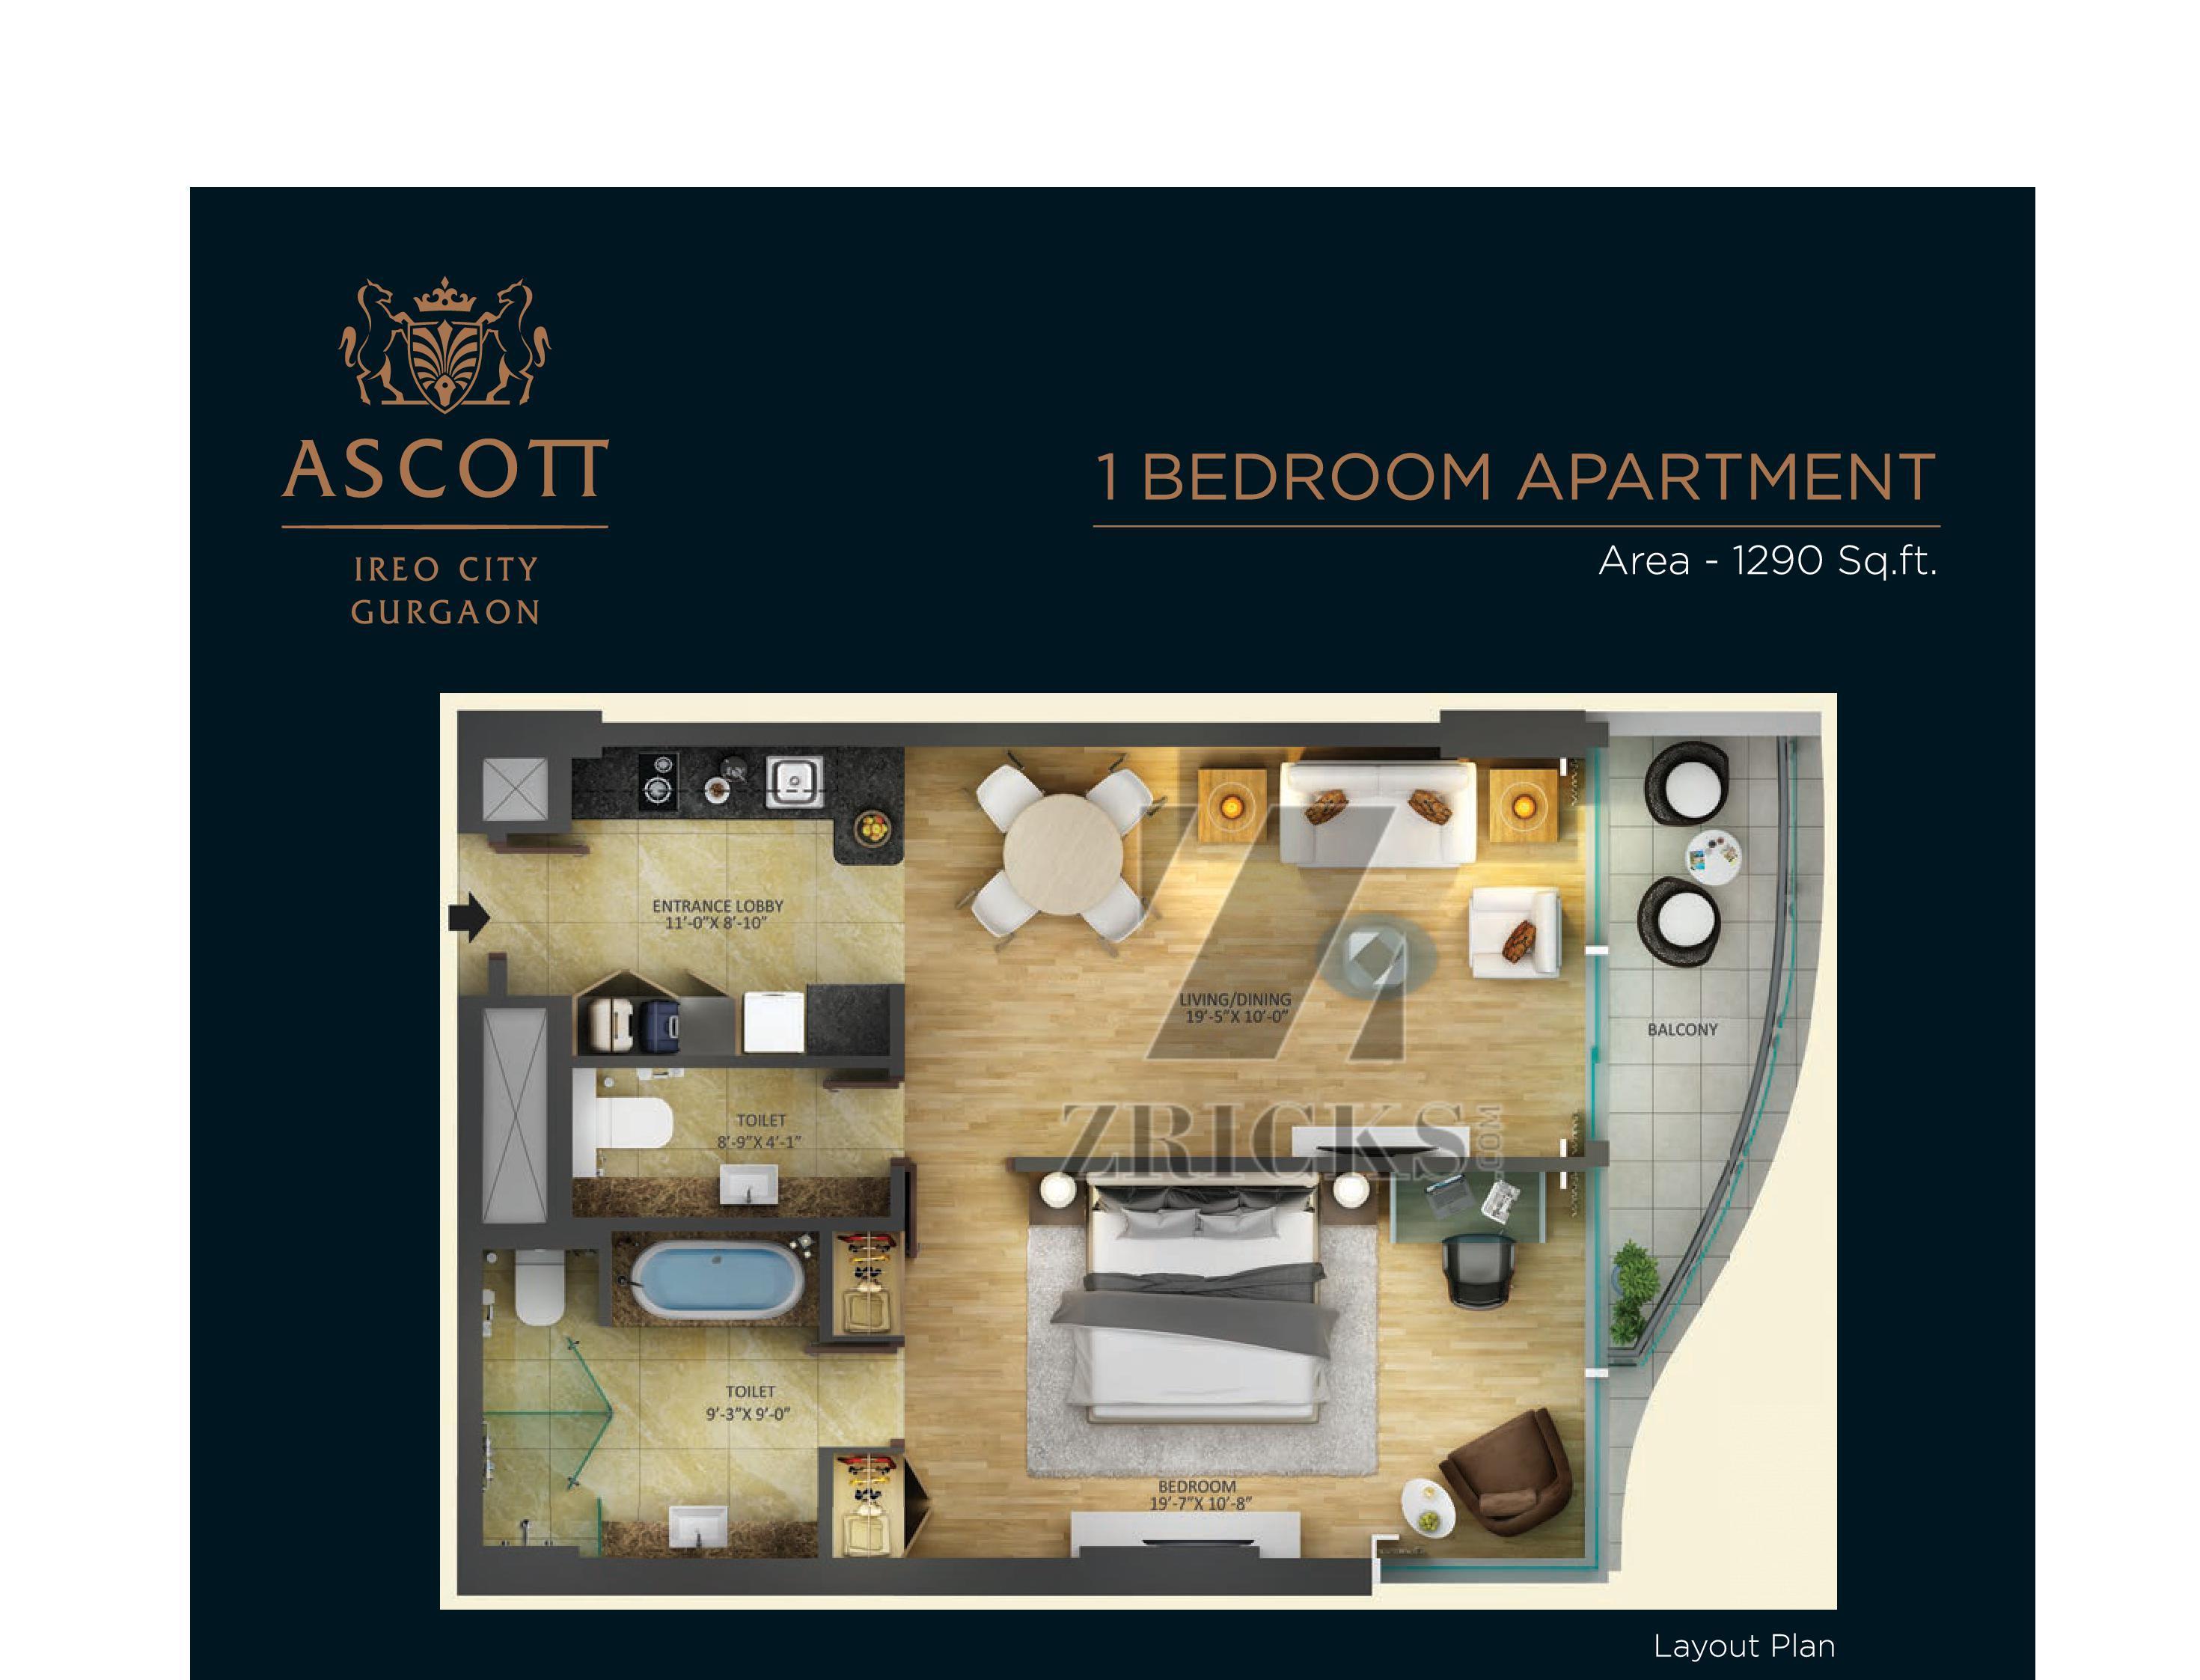 Ascott Ireo City Gurgaon Floor Plan